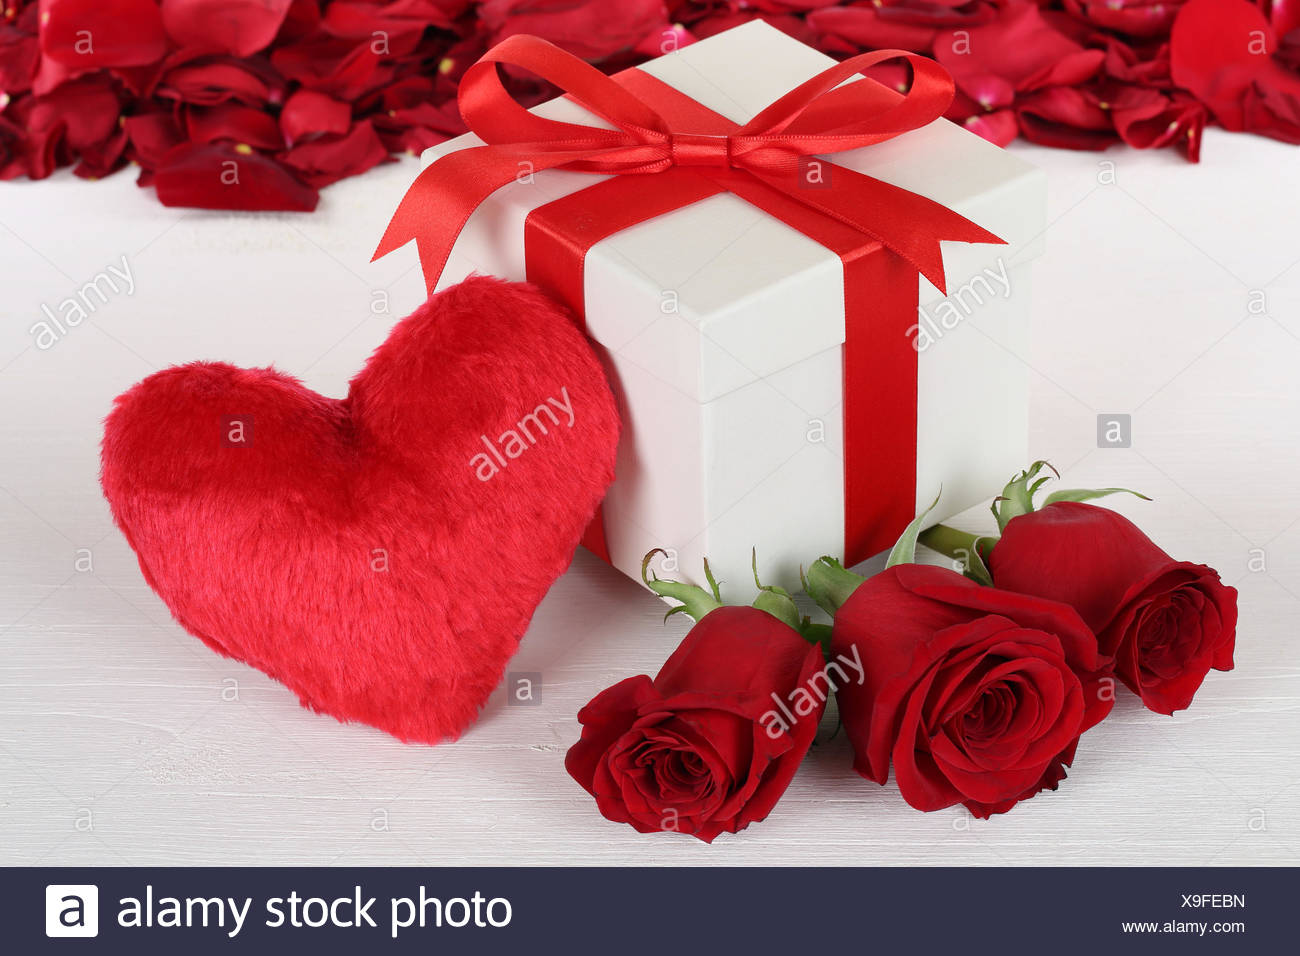 Geschenk Mit Herz Und Rosen Zum Geburtstag Muttertag Oder Valentinstag Stock Photo Alamy